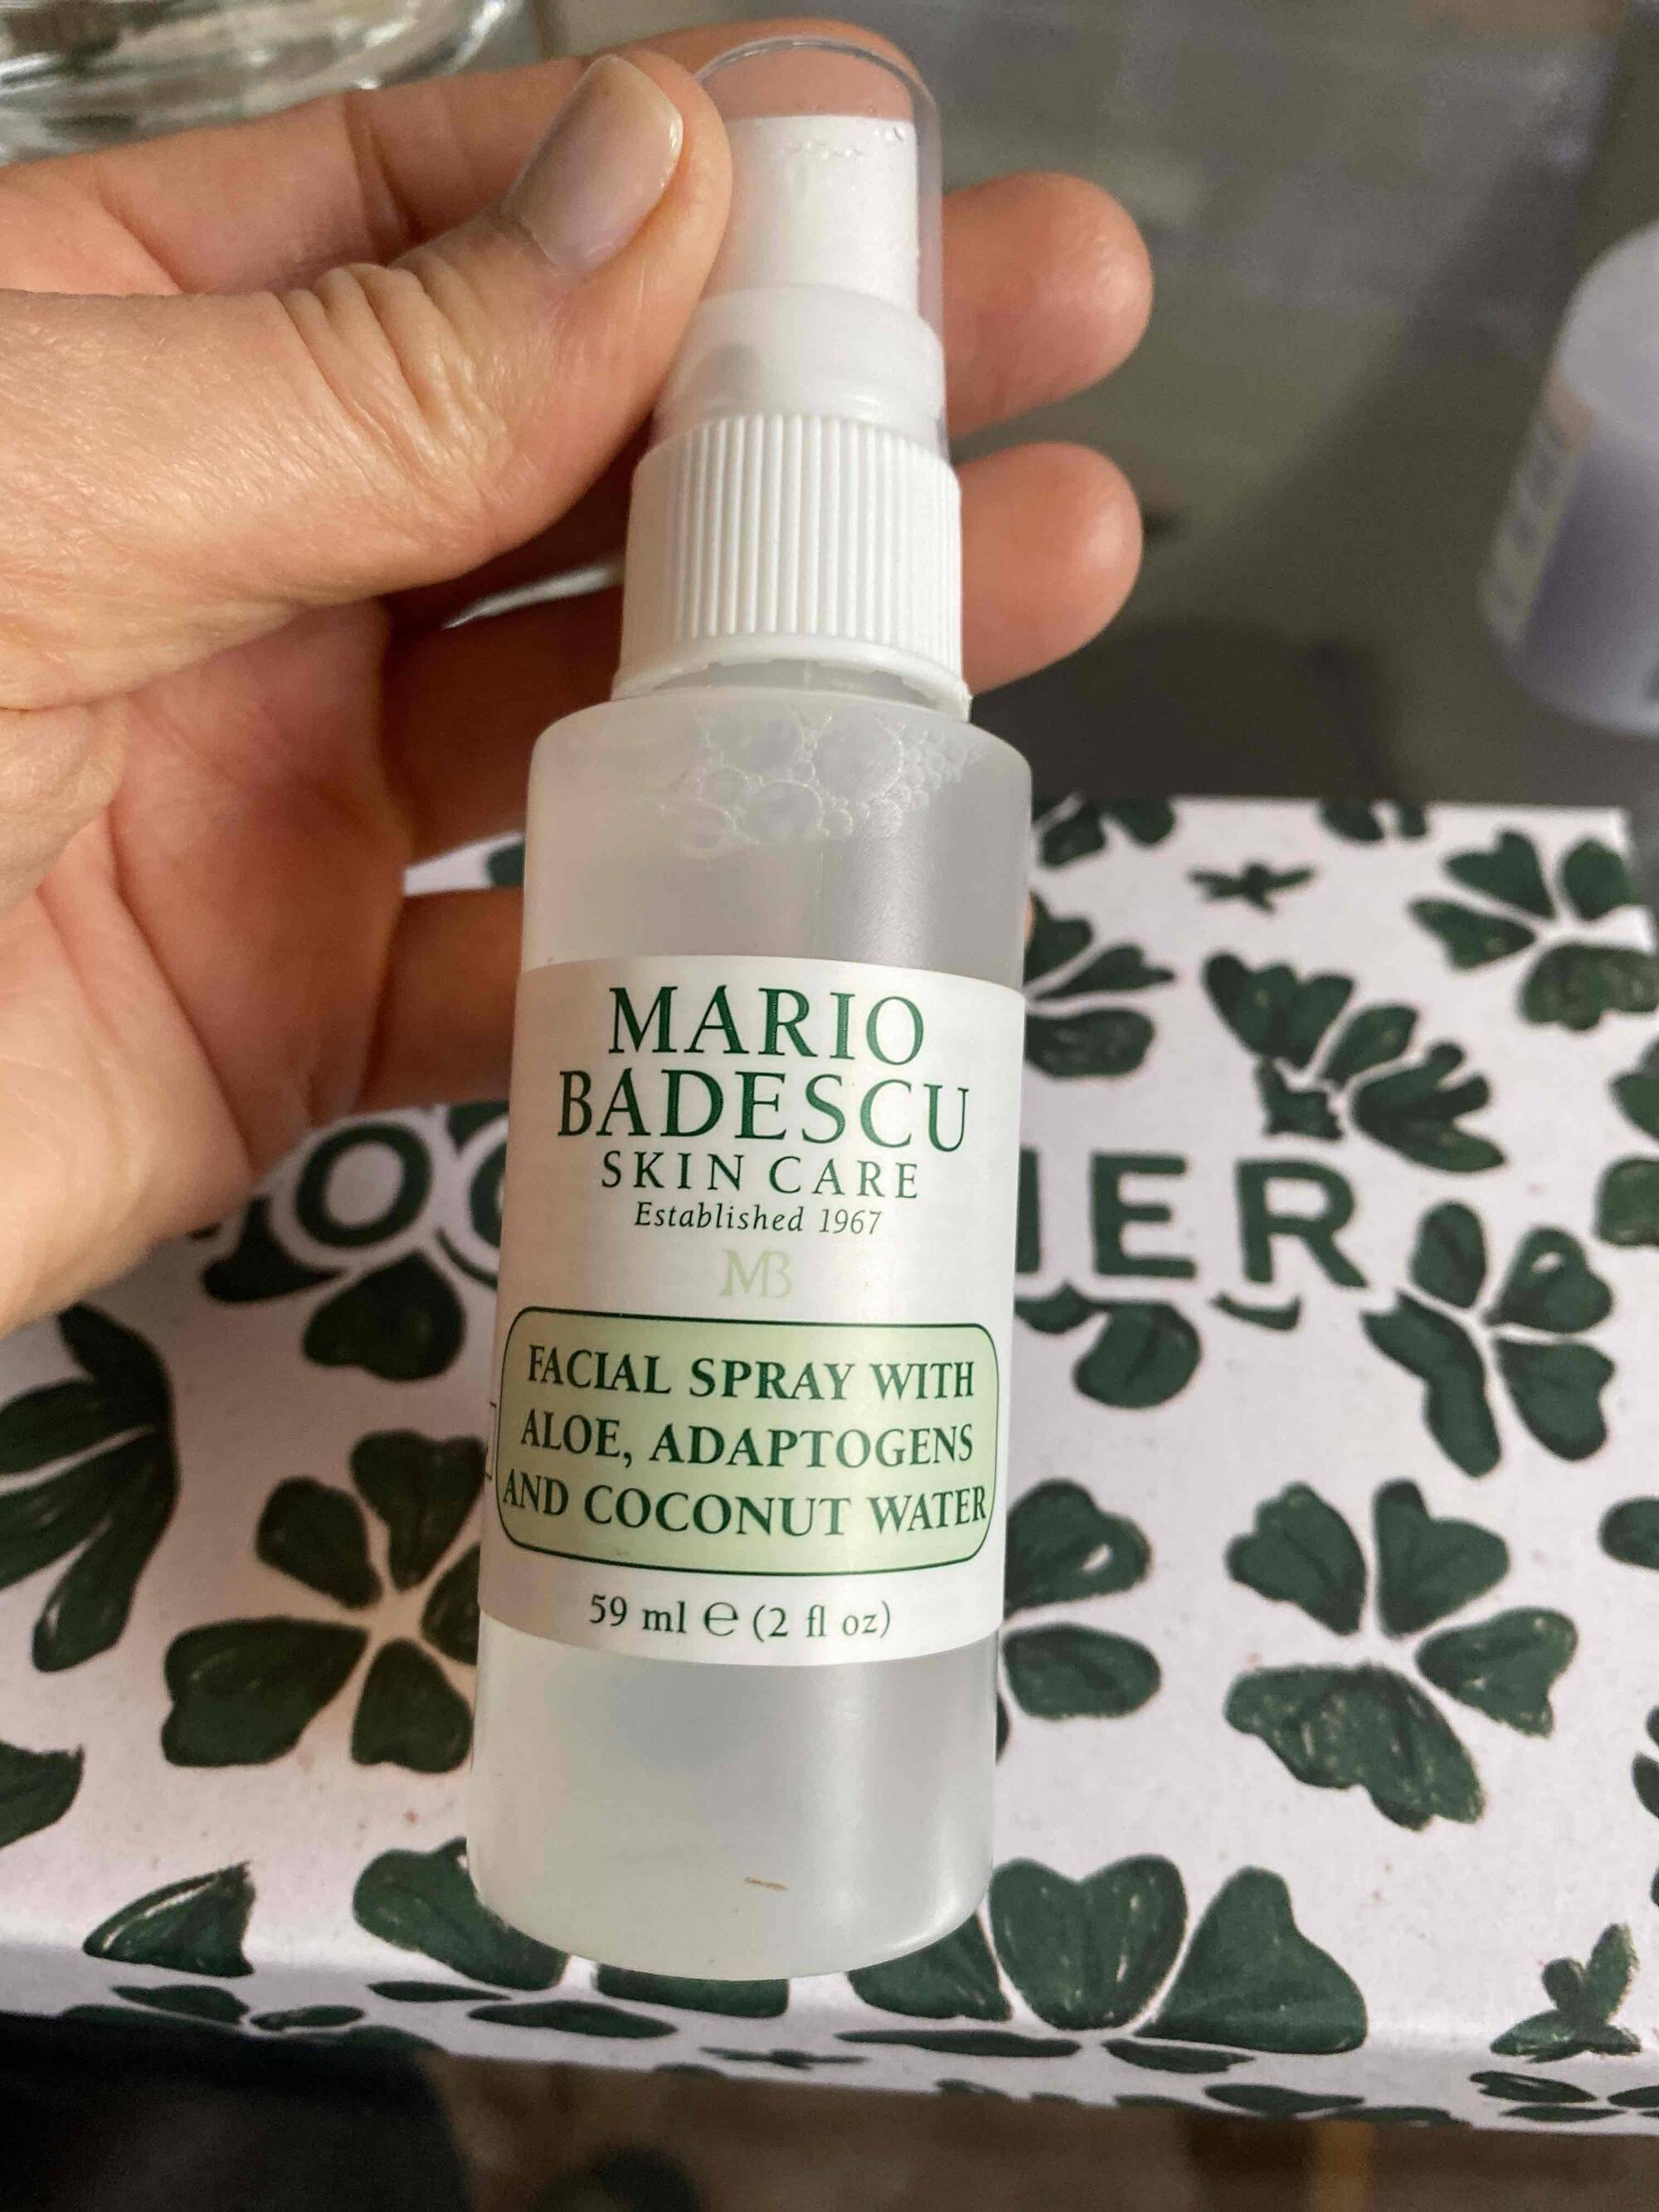 MARIO BADESCU - Facial spray with aloe adaptogens and coconut water